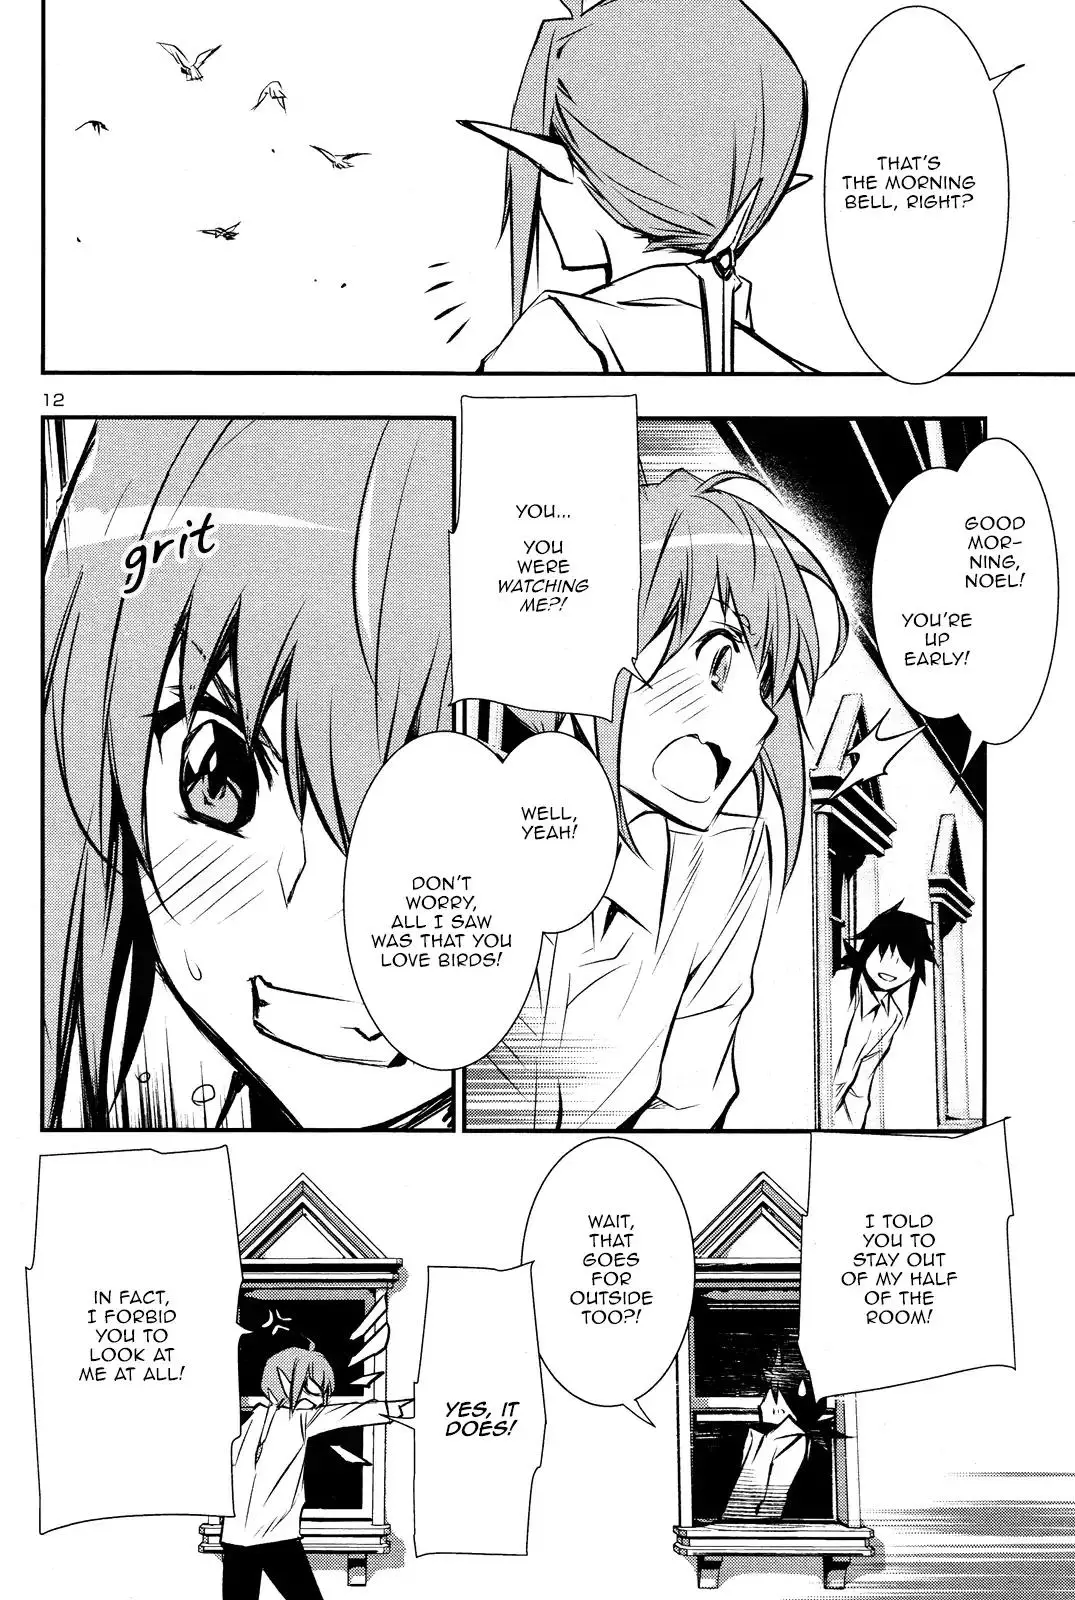 Shinju no Nectar - 31 page 10